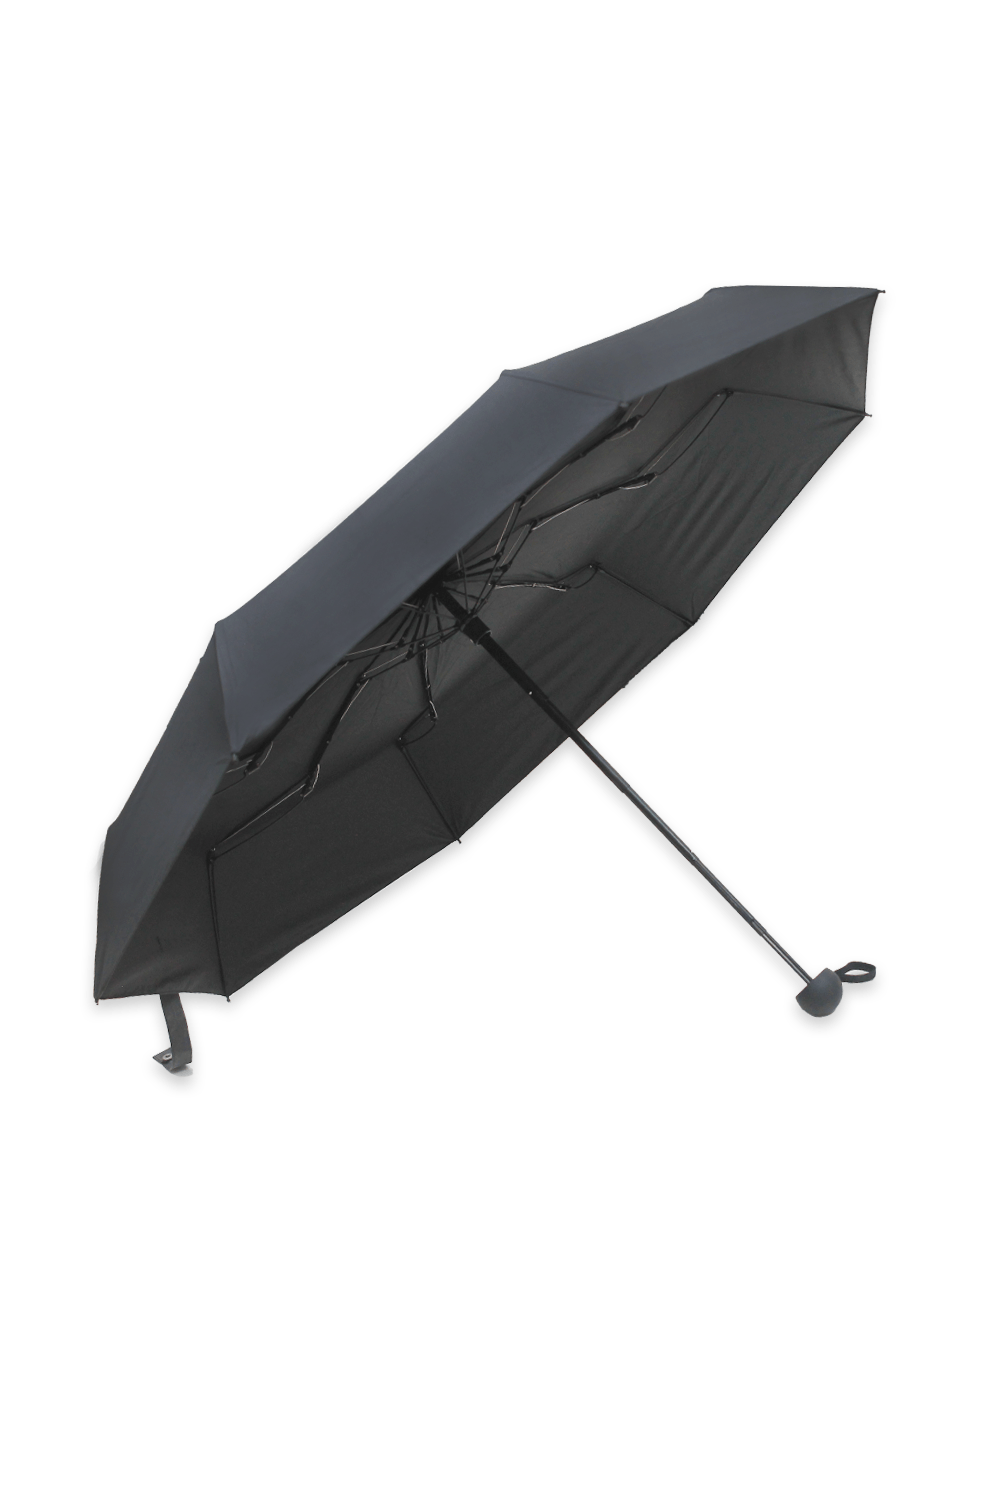 Tiffany Umbrella Black Umbrella